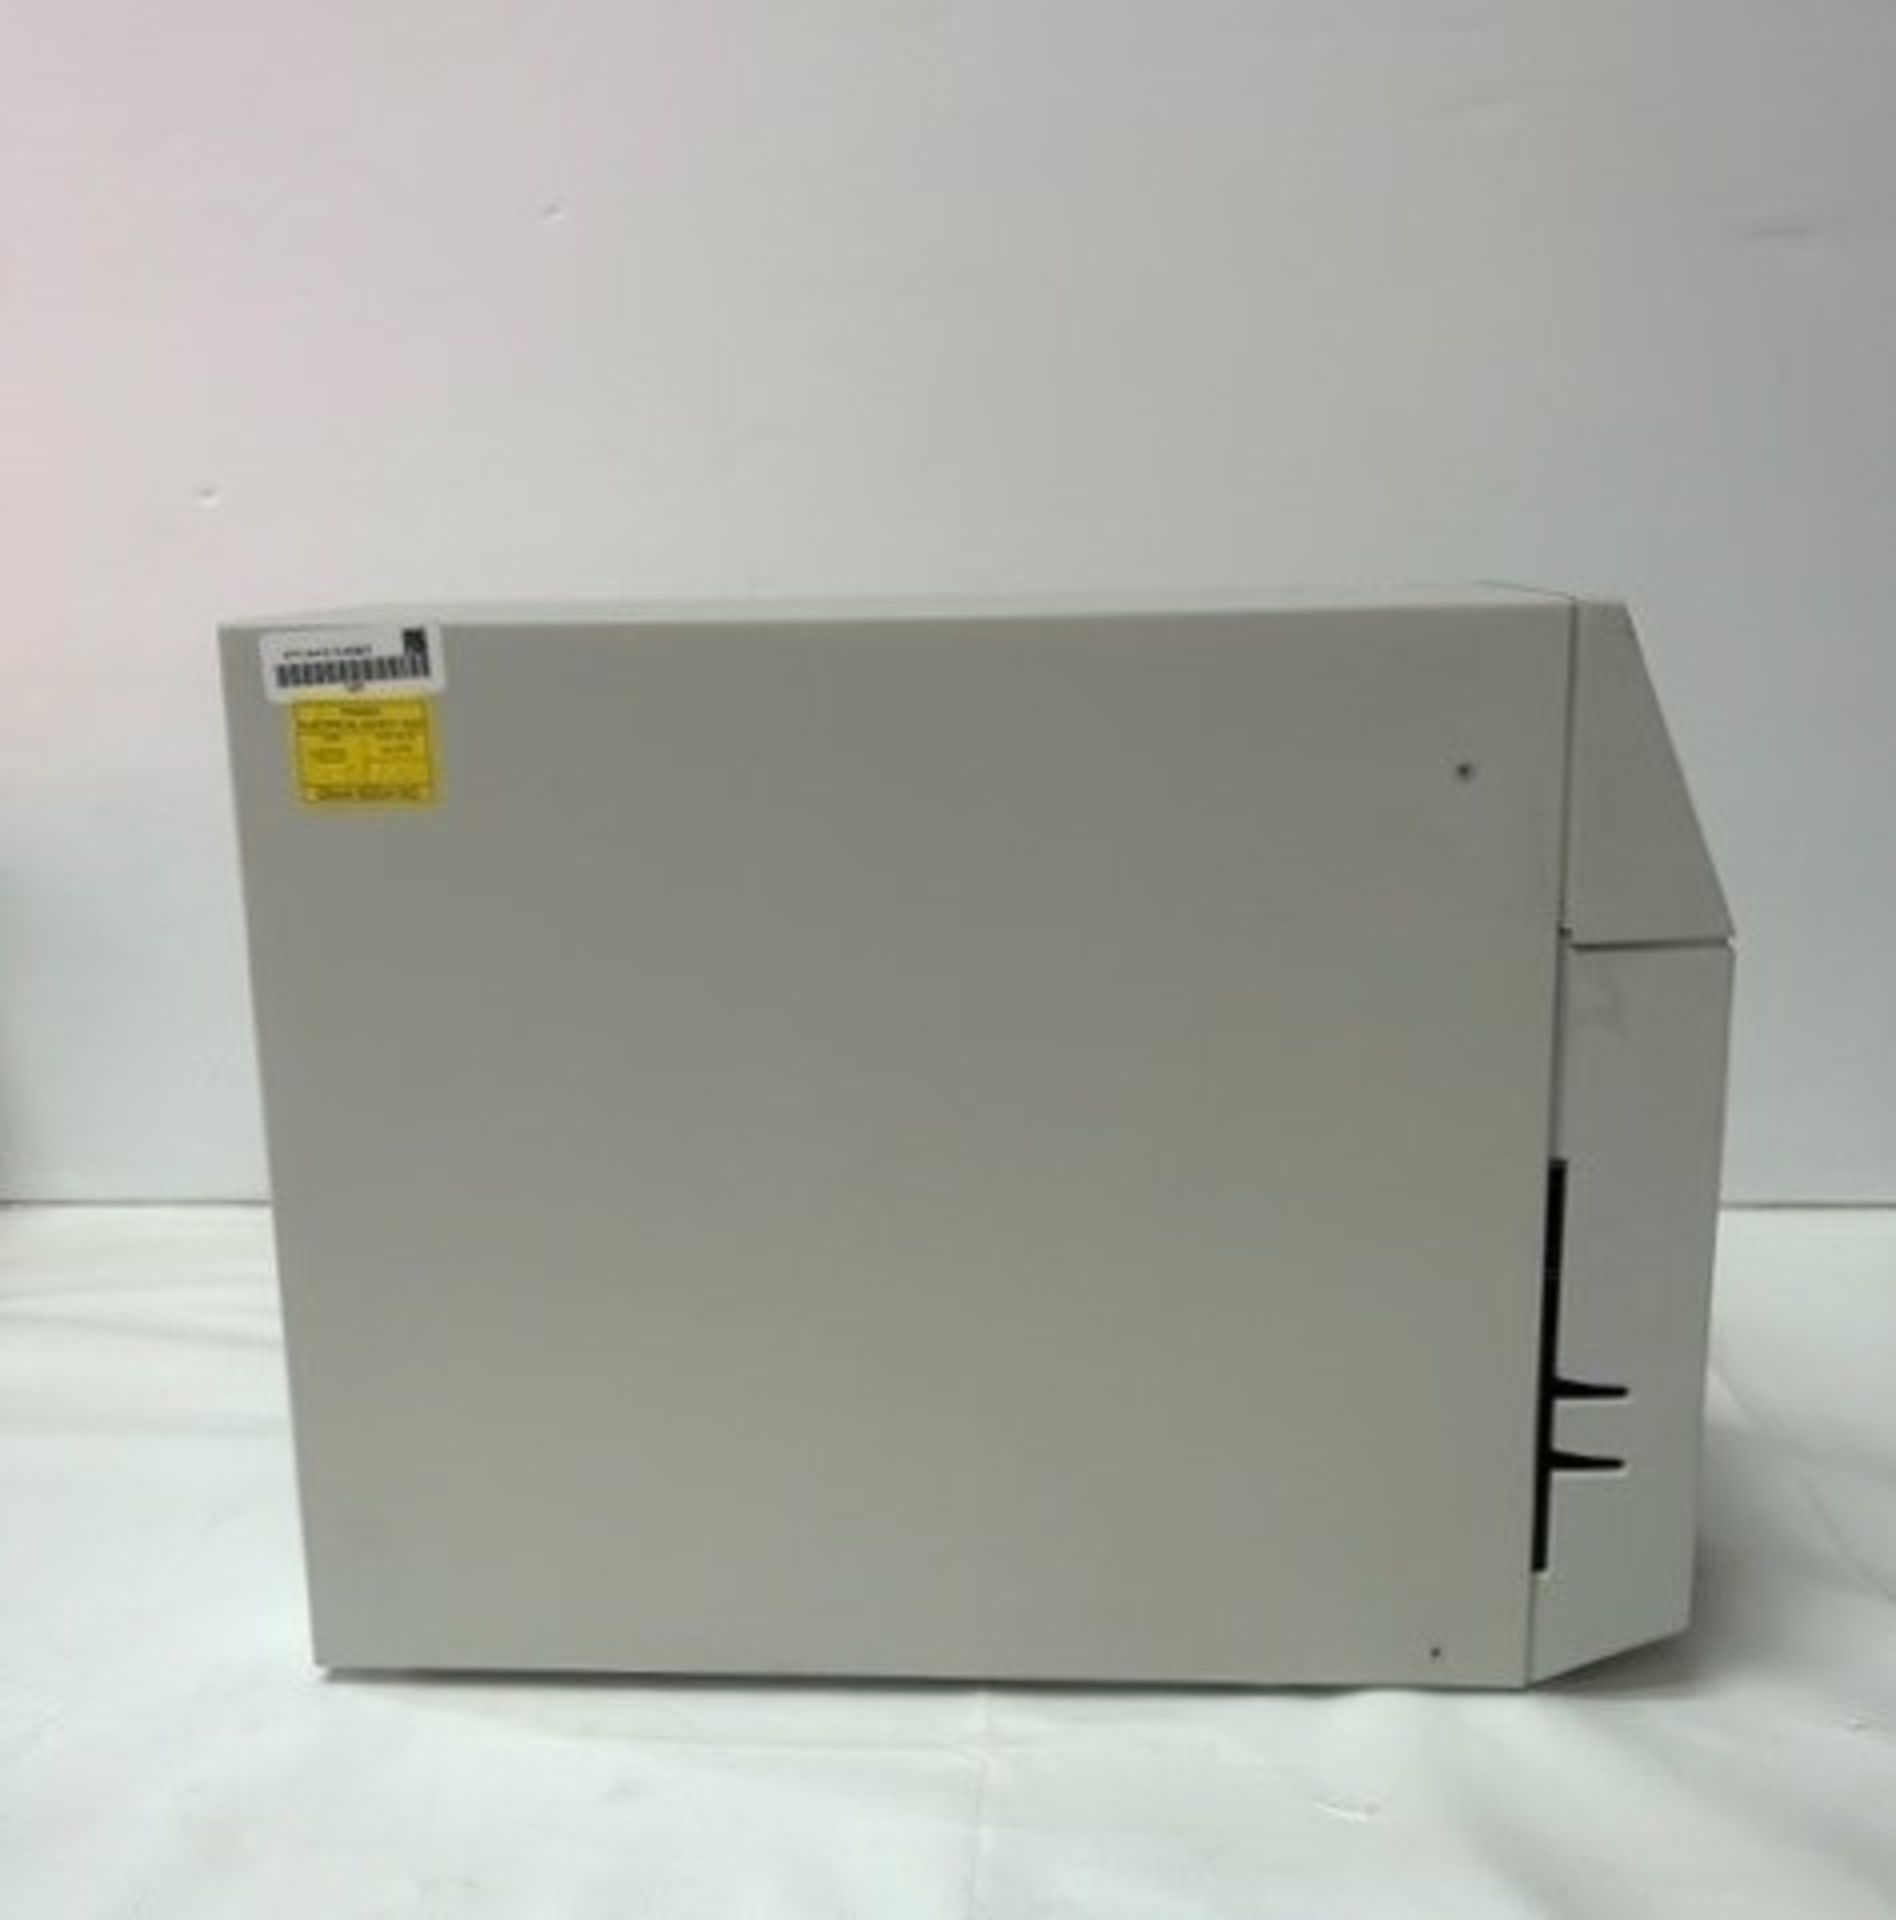 Quaternary Gradient Pump P4000 - Image 3 of 7